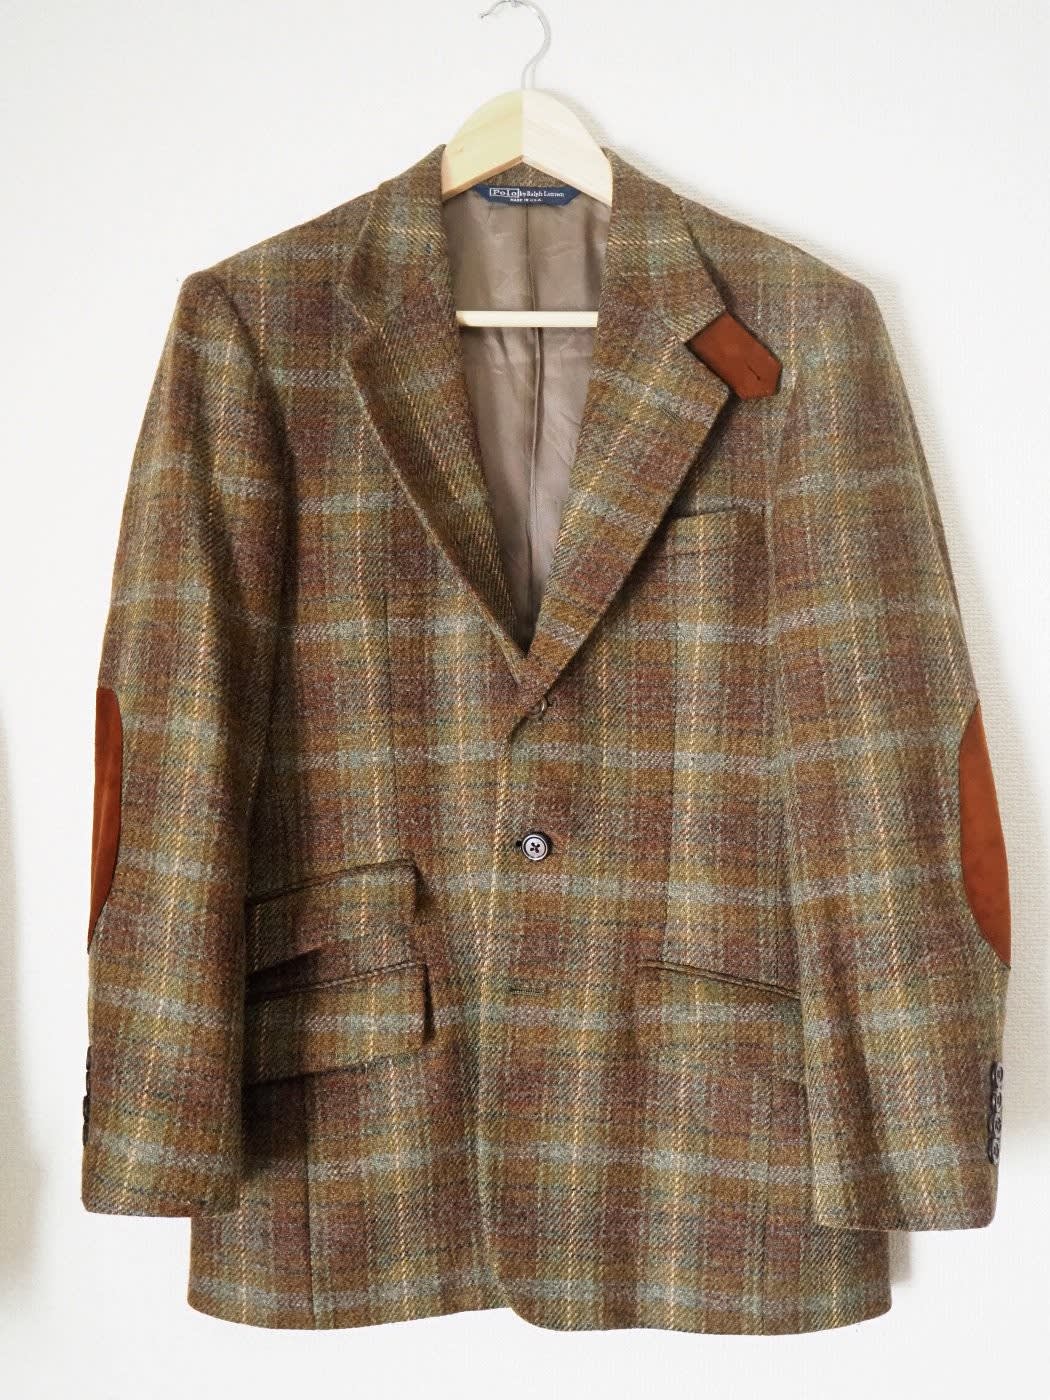 POLO Ralph Lauren "Tweed Jacket" - お買いモノ考